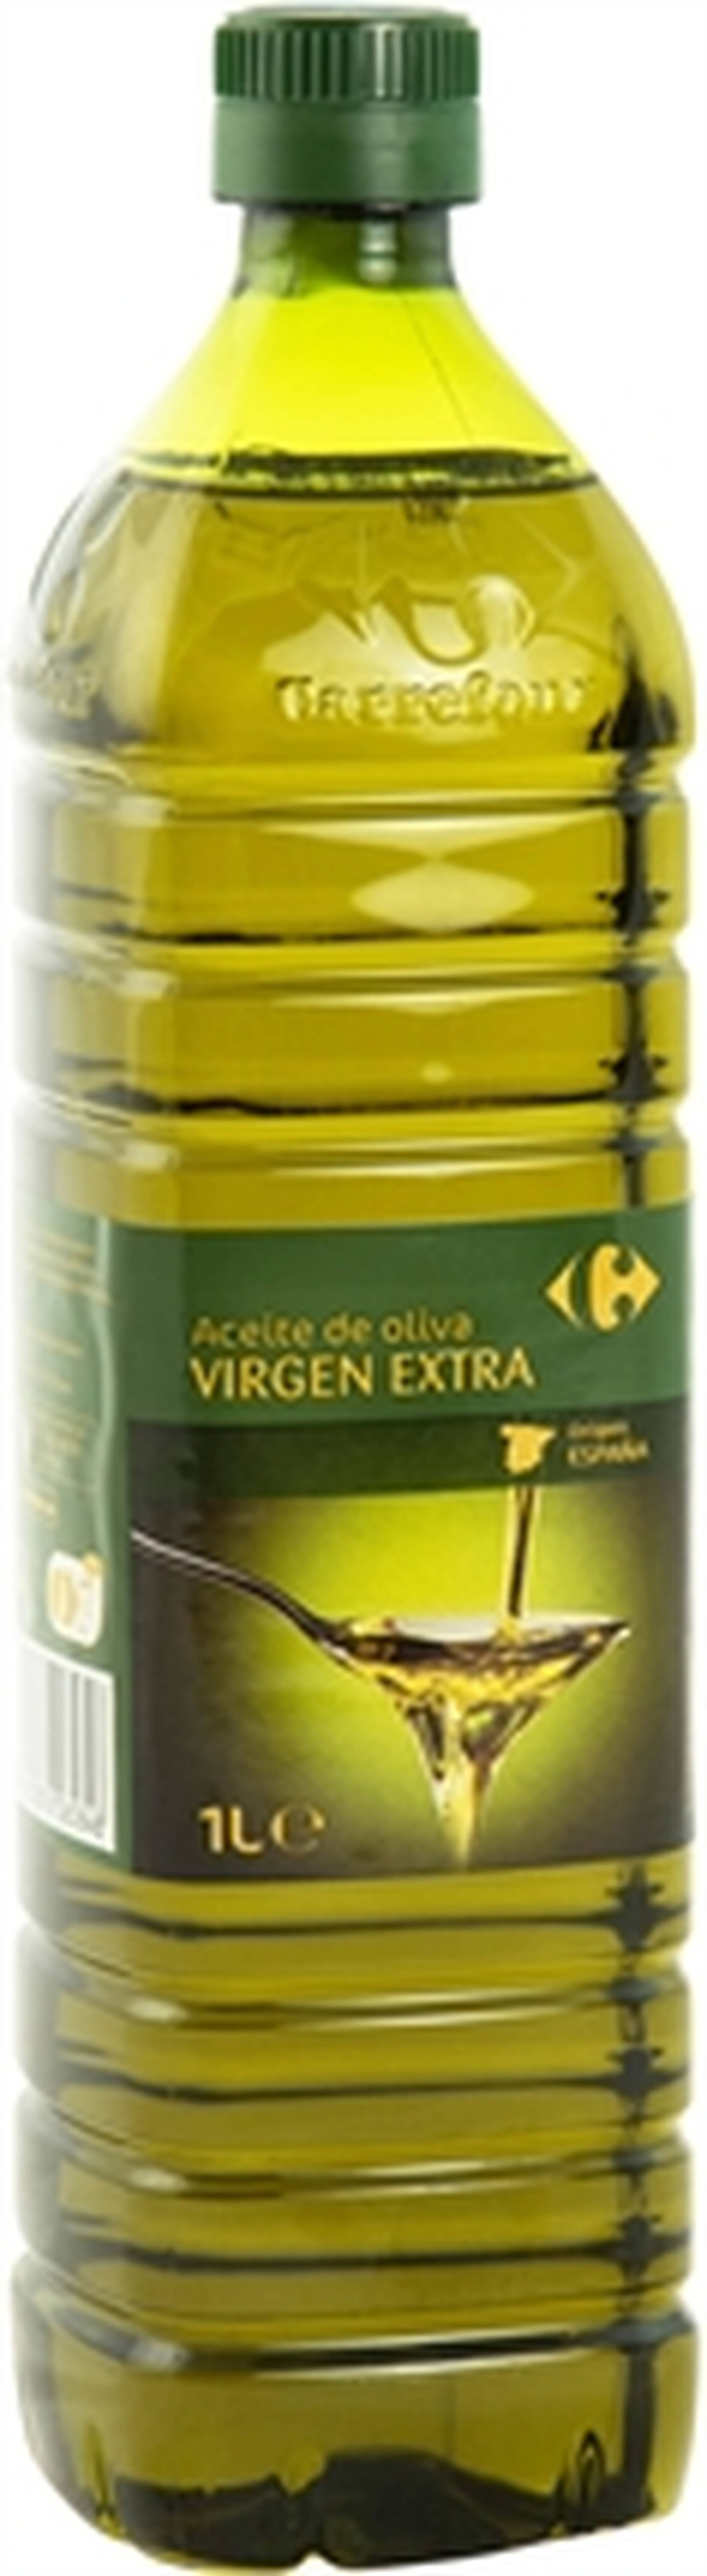 Los mejores aceites de oliva virgen extra de supermercado